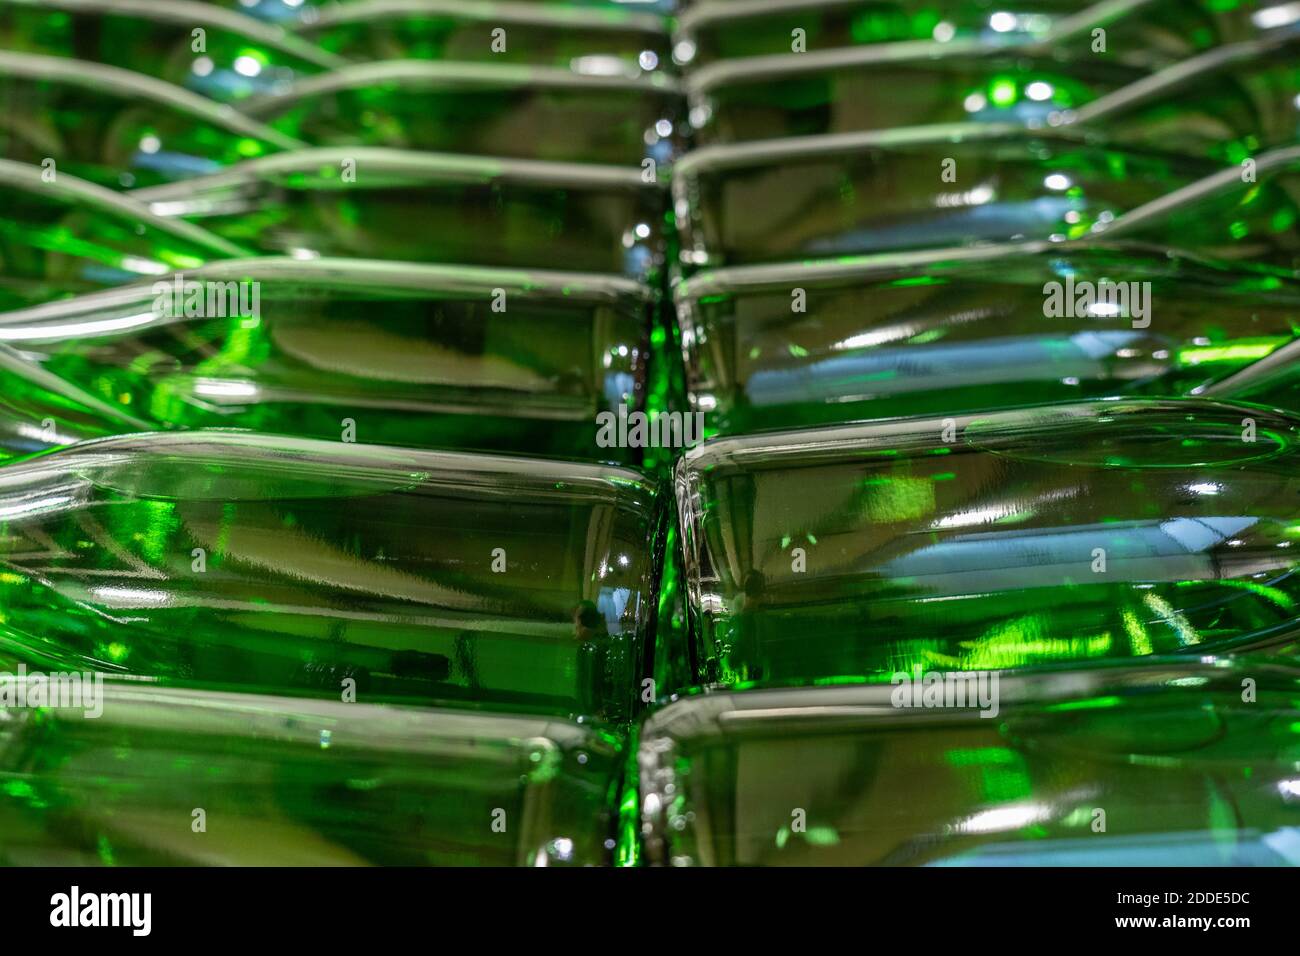 Bottiglie di vino verde riempite con vino bianco impilate sopra tra loro Foto Stock